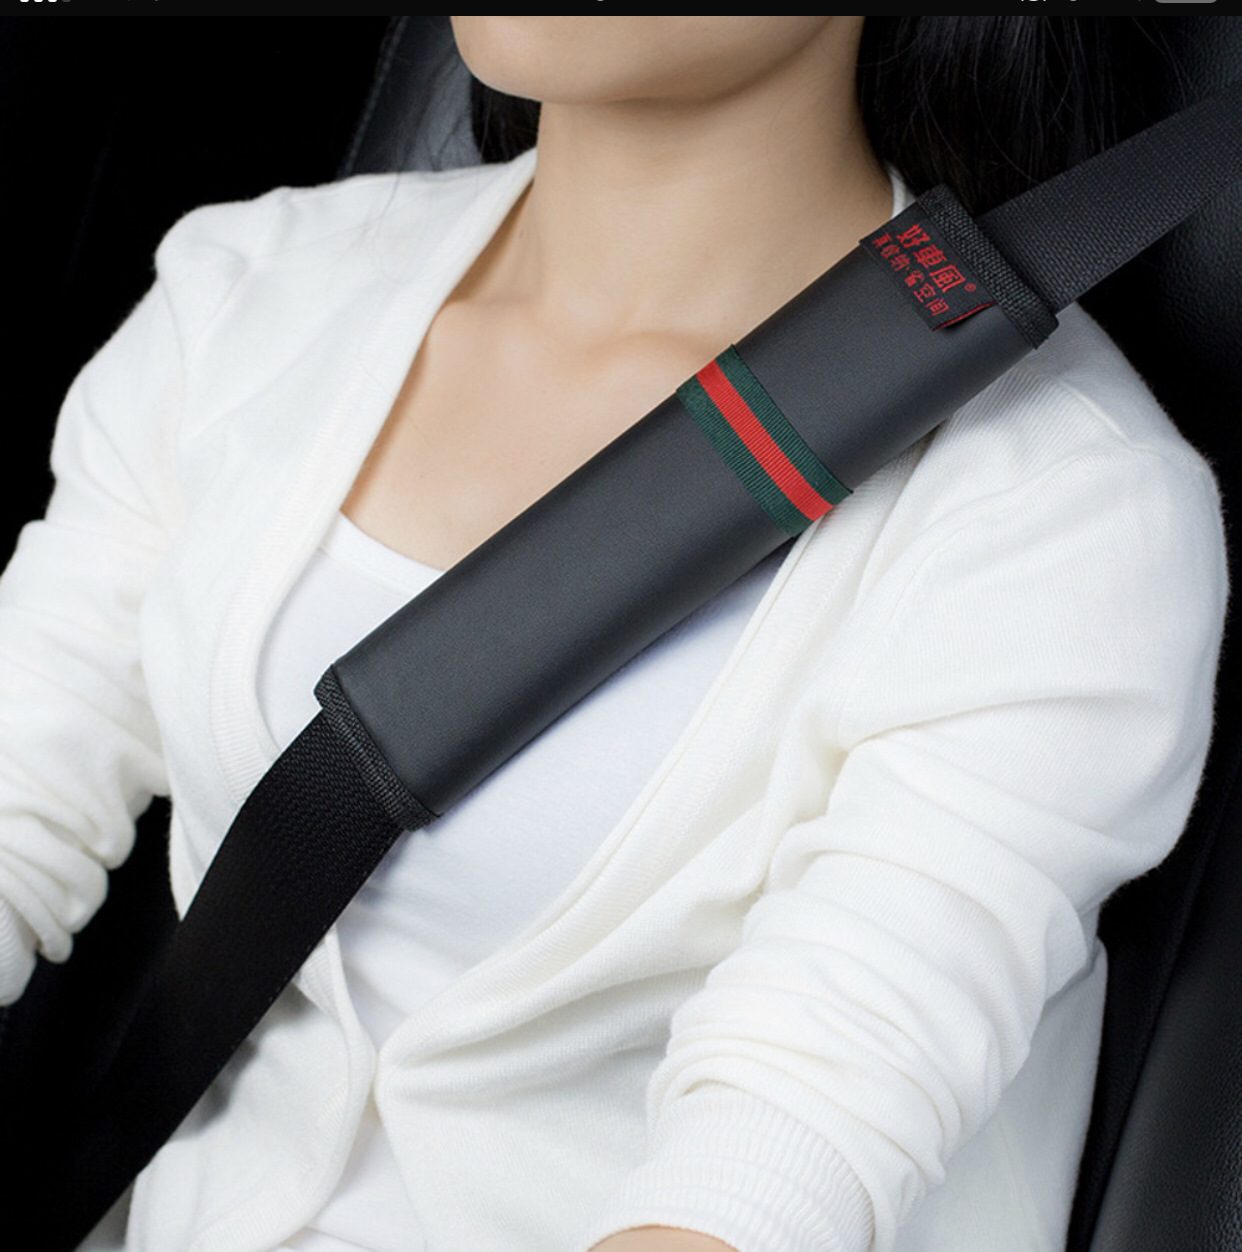 Пассажирский ремень безопасности. Seat Belt. Ремень безопасности в авто. Пристегнуть ремни. Пристегнутый ремень безопасности.